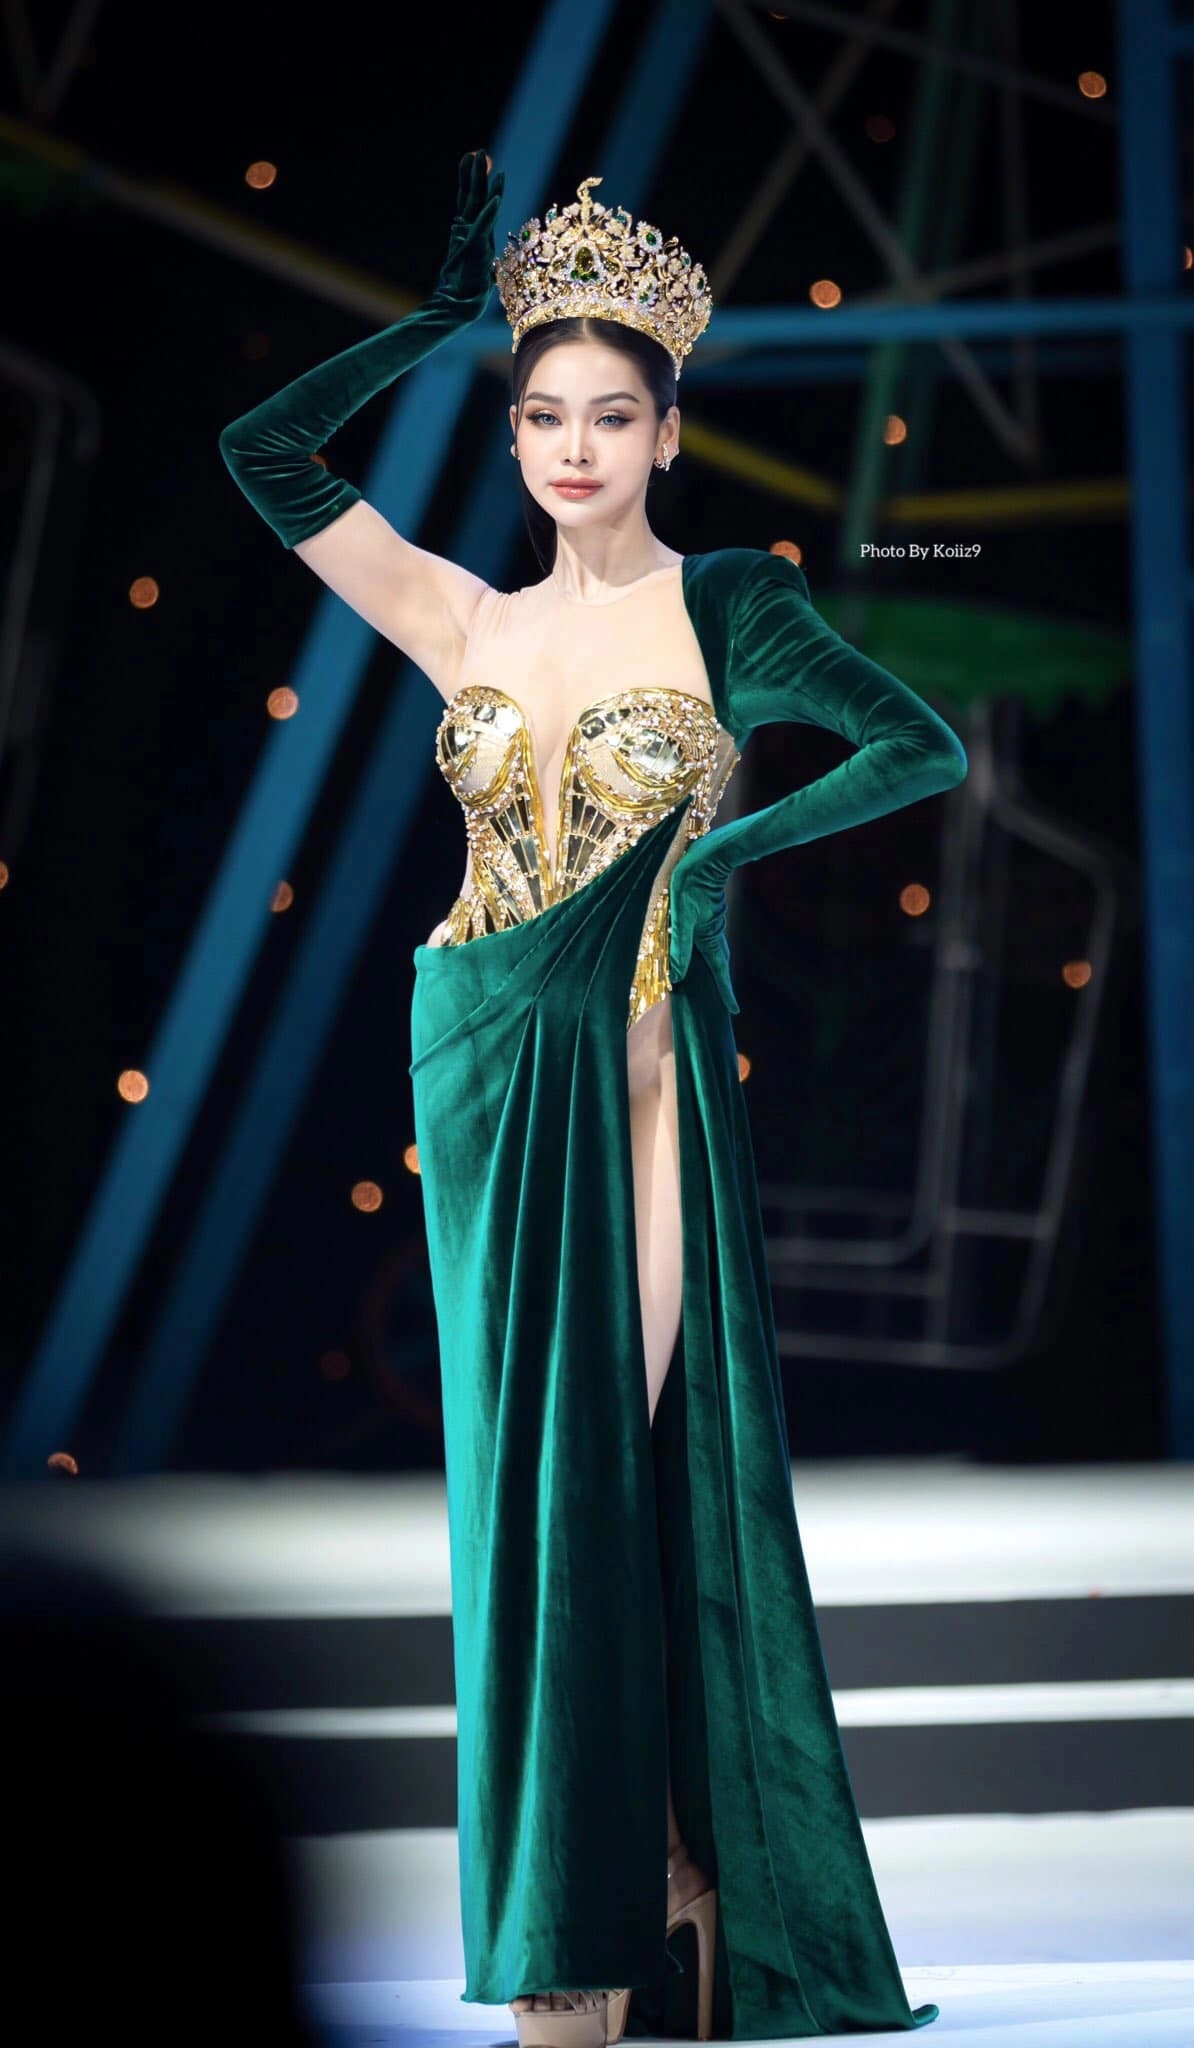 Hoa hậu Hòa bình Thái Lan bị chỉ trích vì mặc váy hở nội y-1